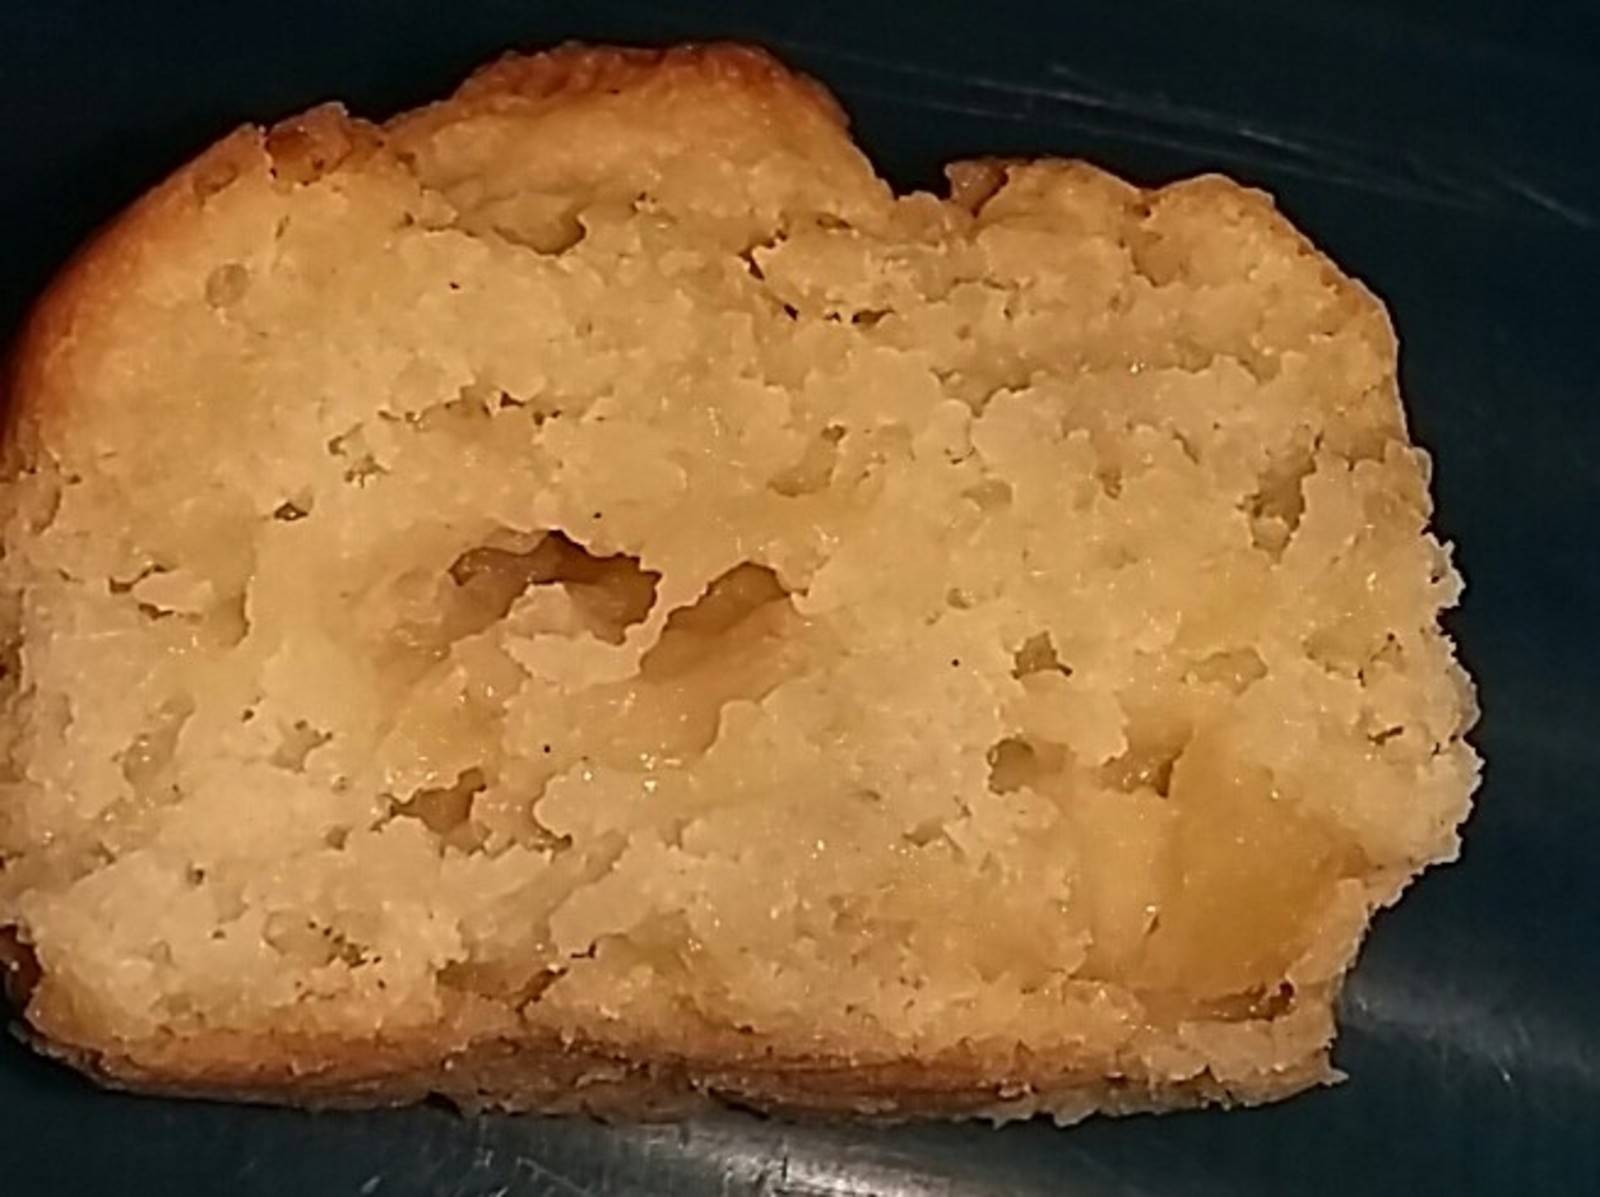 Apfel-Haferflocken Muffins